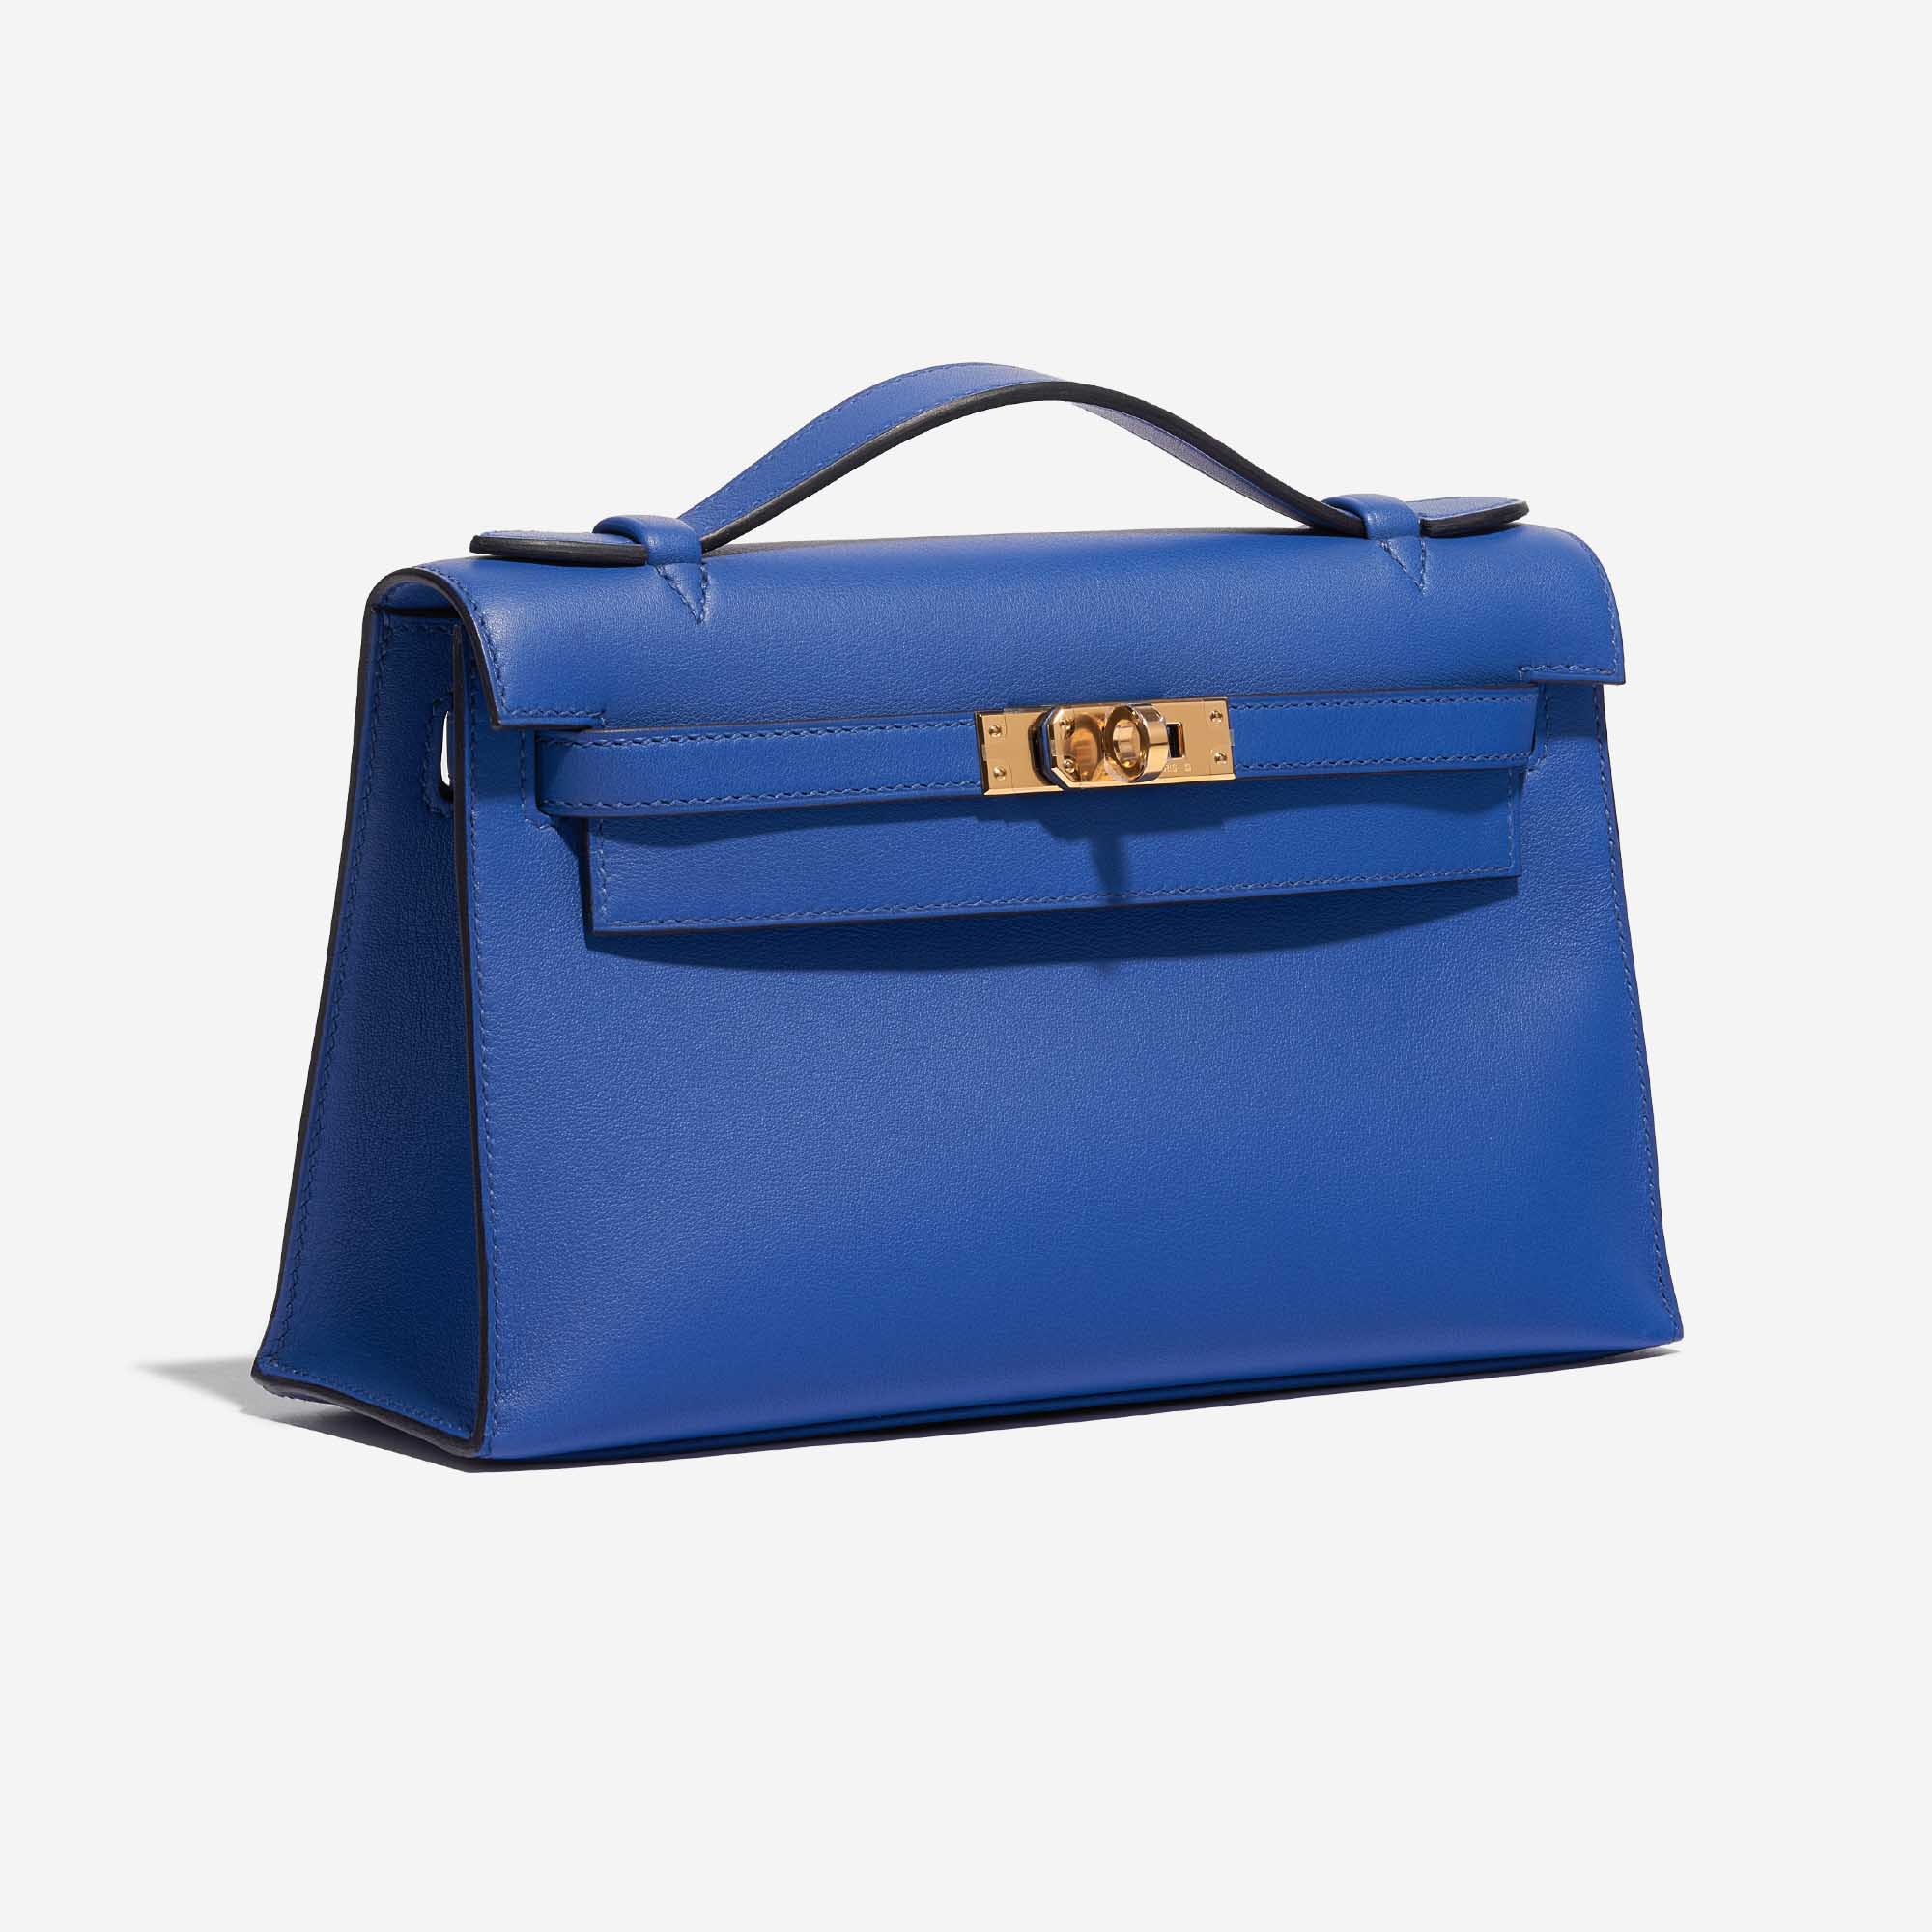 Pre-owned Hermès Tasche Kelly Pochette Swift Blue de France Blue Side Front | Verkaufen Sie Ihre Designer-Tasche auf Saclab.com